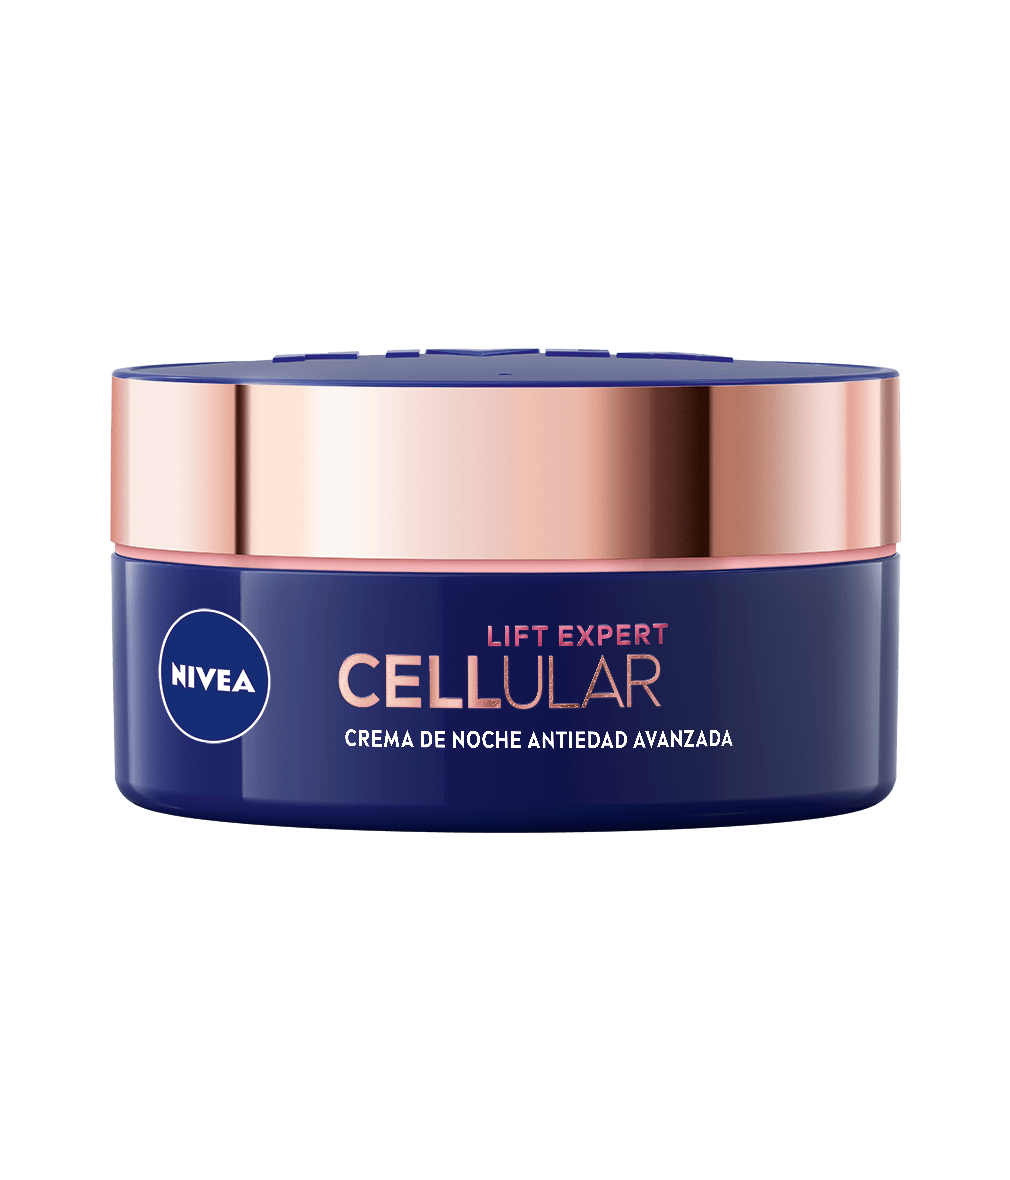 Cellular Expert Lift Crema de Noche